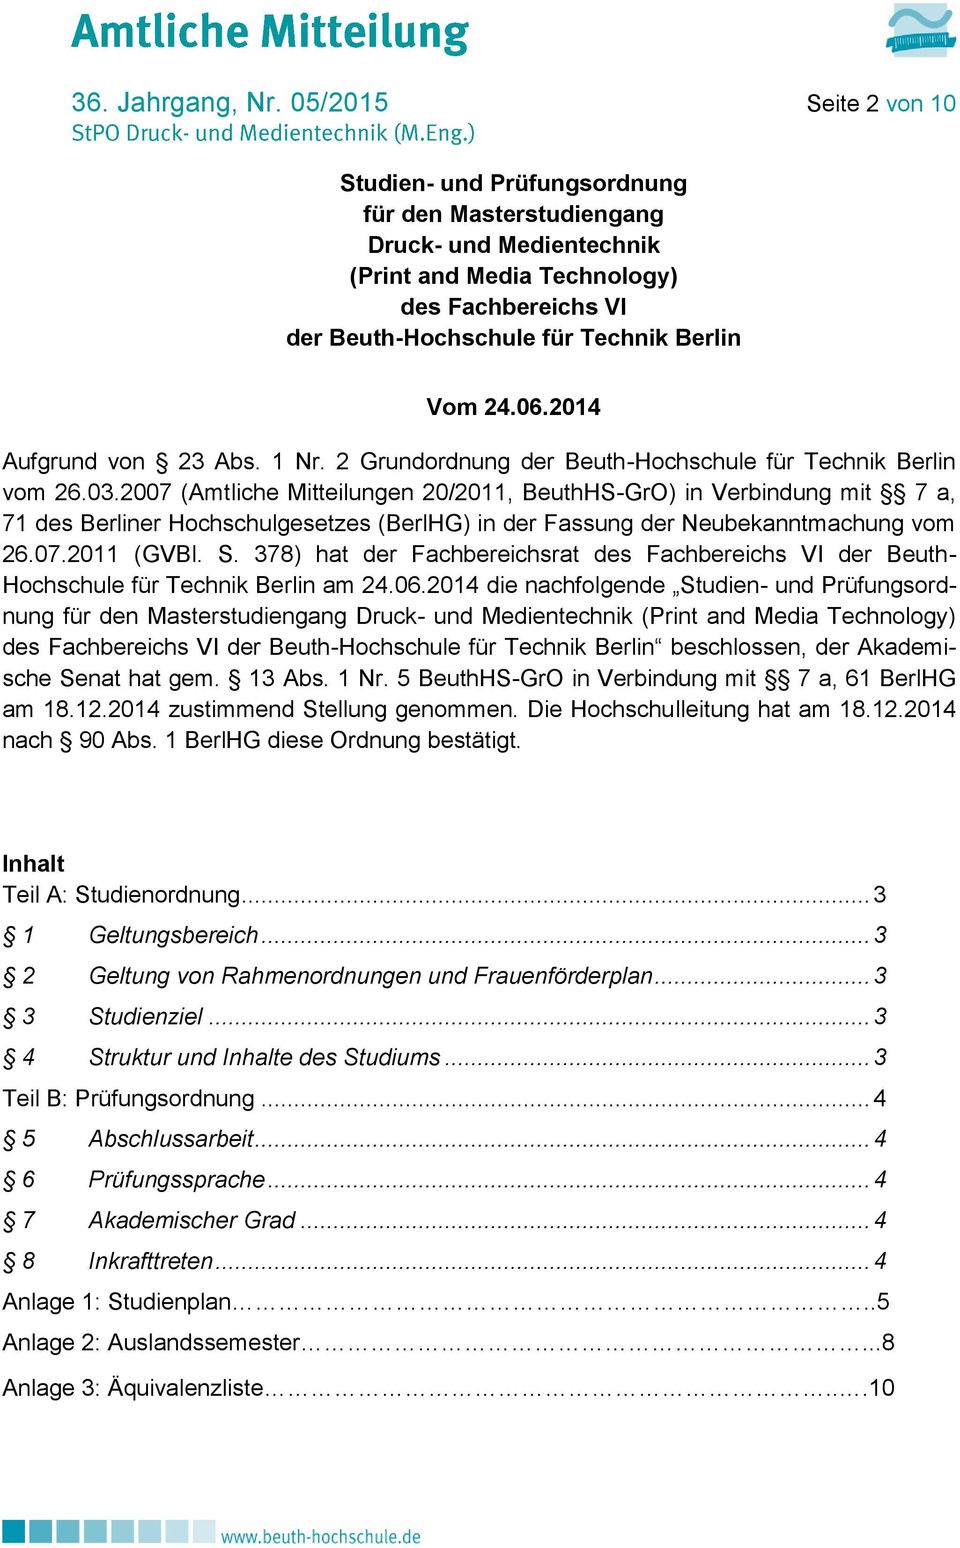 06.2014 Aufgrund von 23 Abs. 1 Nr. 2 Grundordnung der Beuth-Hochschule für Technik Berlin vom 26.03.